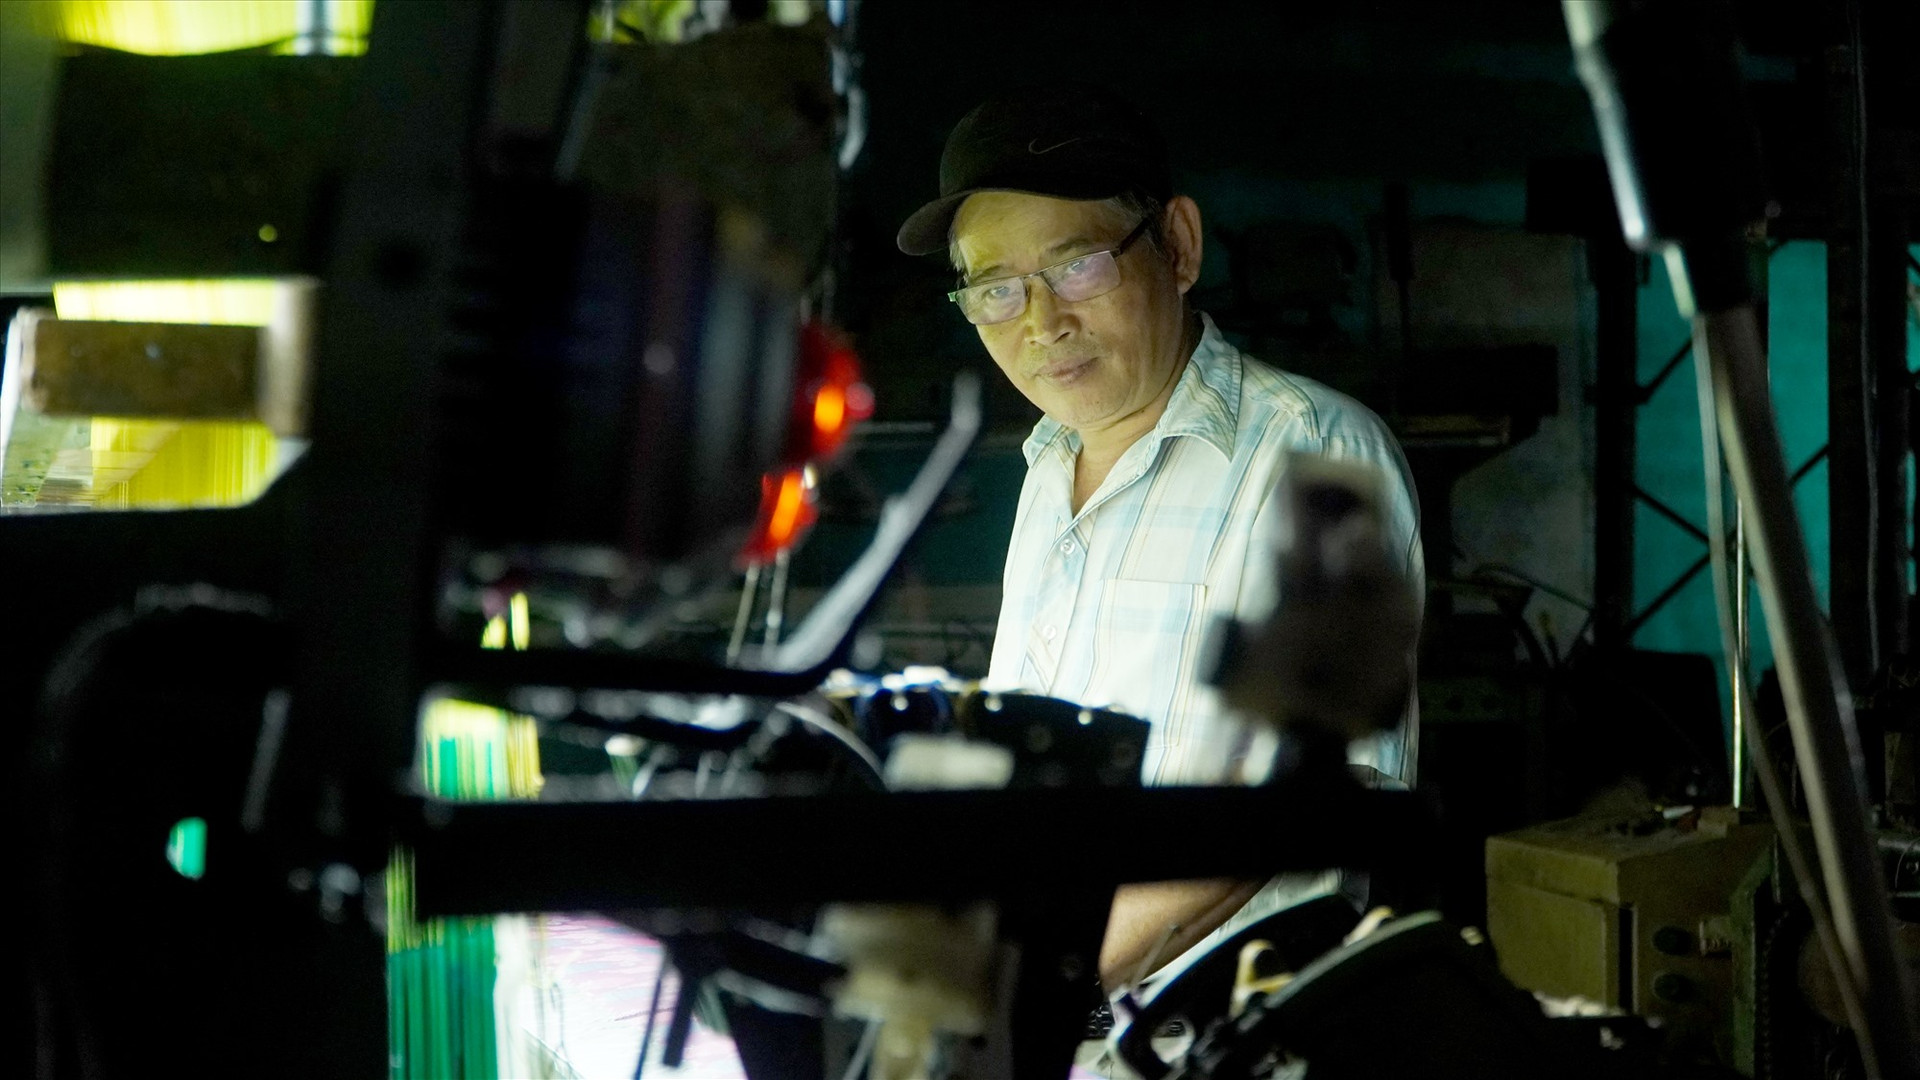 Gần 20 năm qua, ông Trần Hữu Phương miệt mài nghiên cứu máy móc, cải tiến chất lượng sản phẩm. Ảnh: PHAN VINH